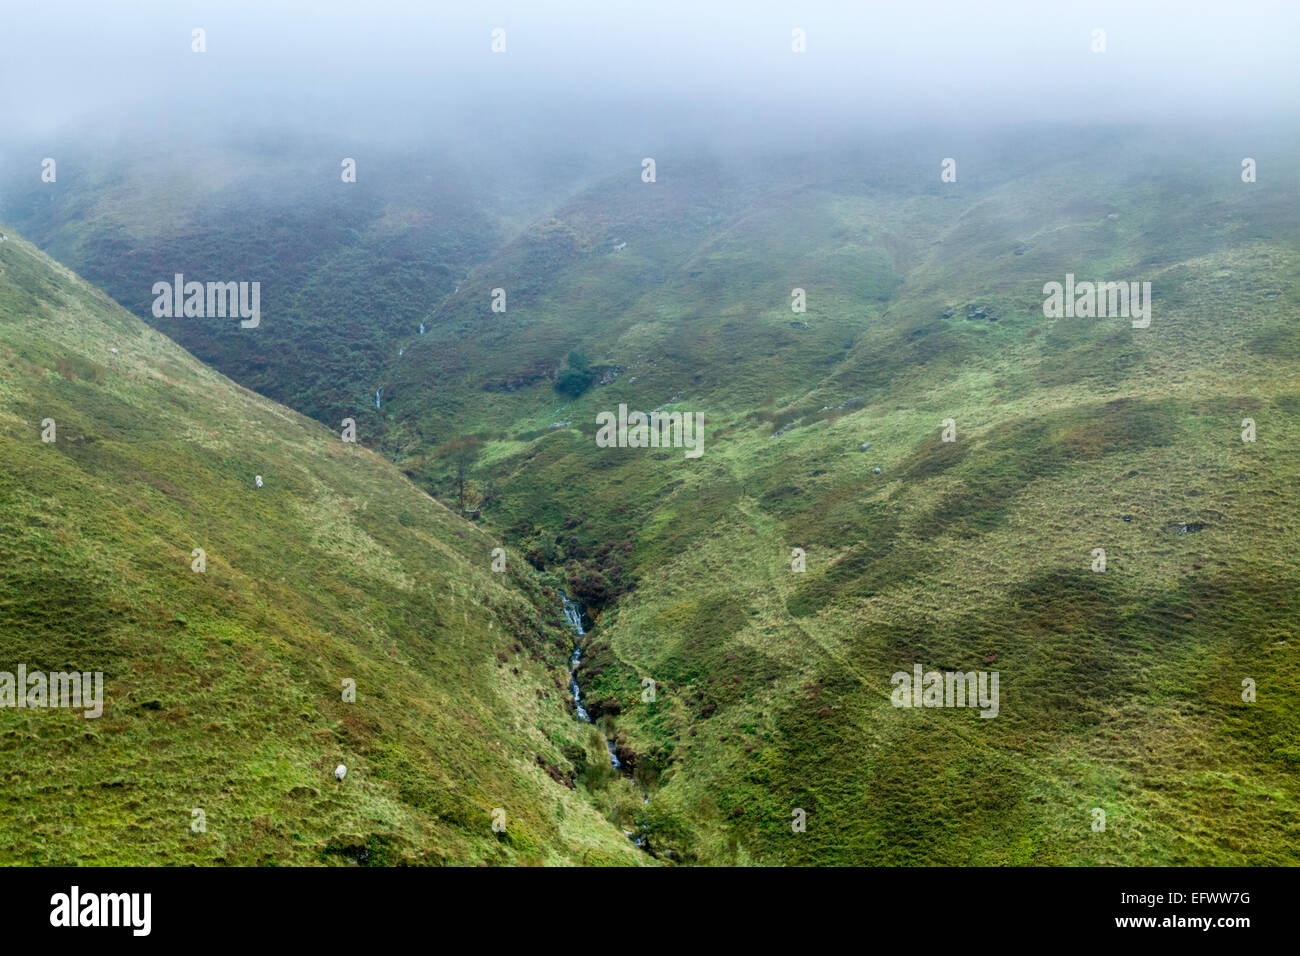 Brume sur la lande, Cloughs de colline sur le bord sud-ouest de Kinder scout dans le Derbyshire, parc national de Peak District, England, UK Banque D'Images